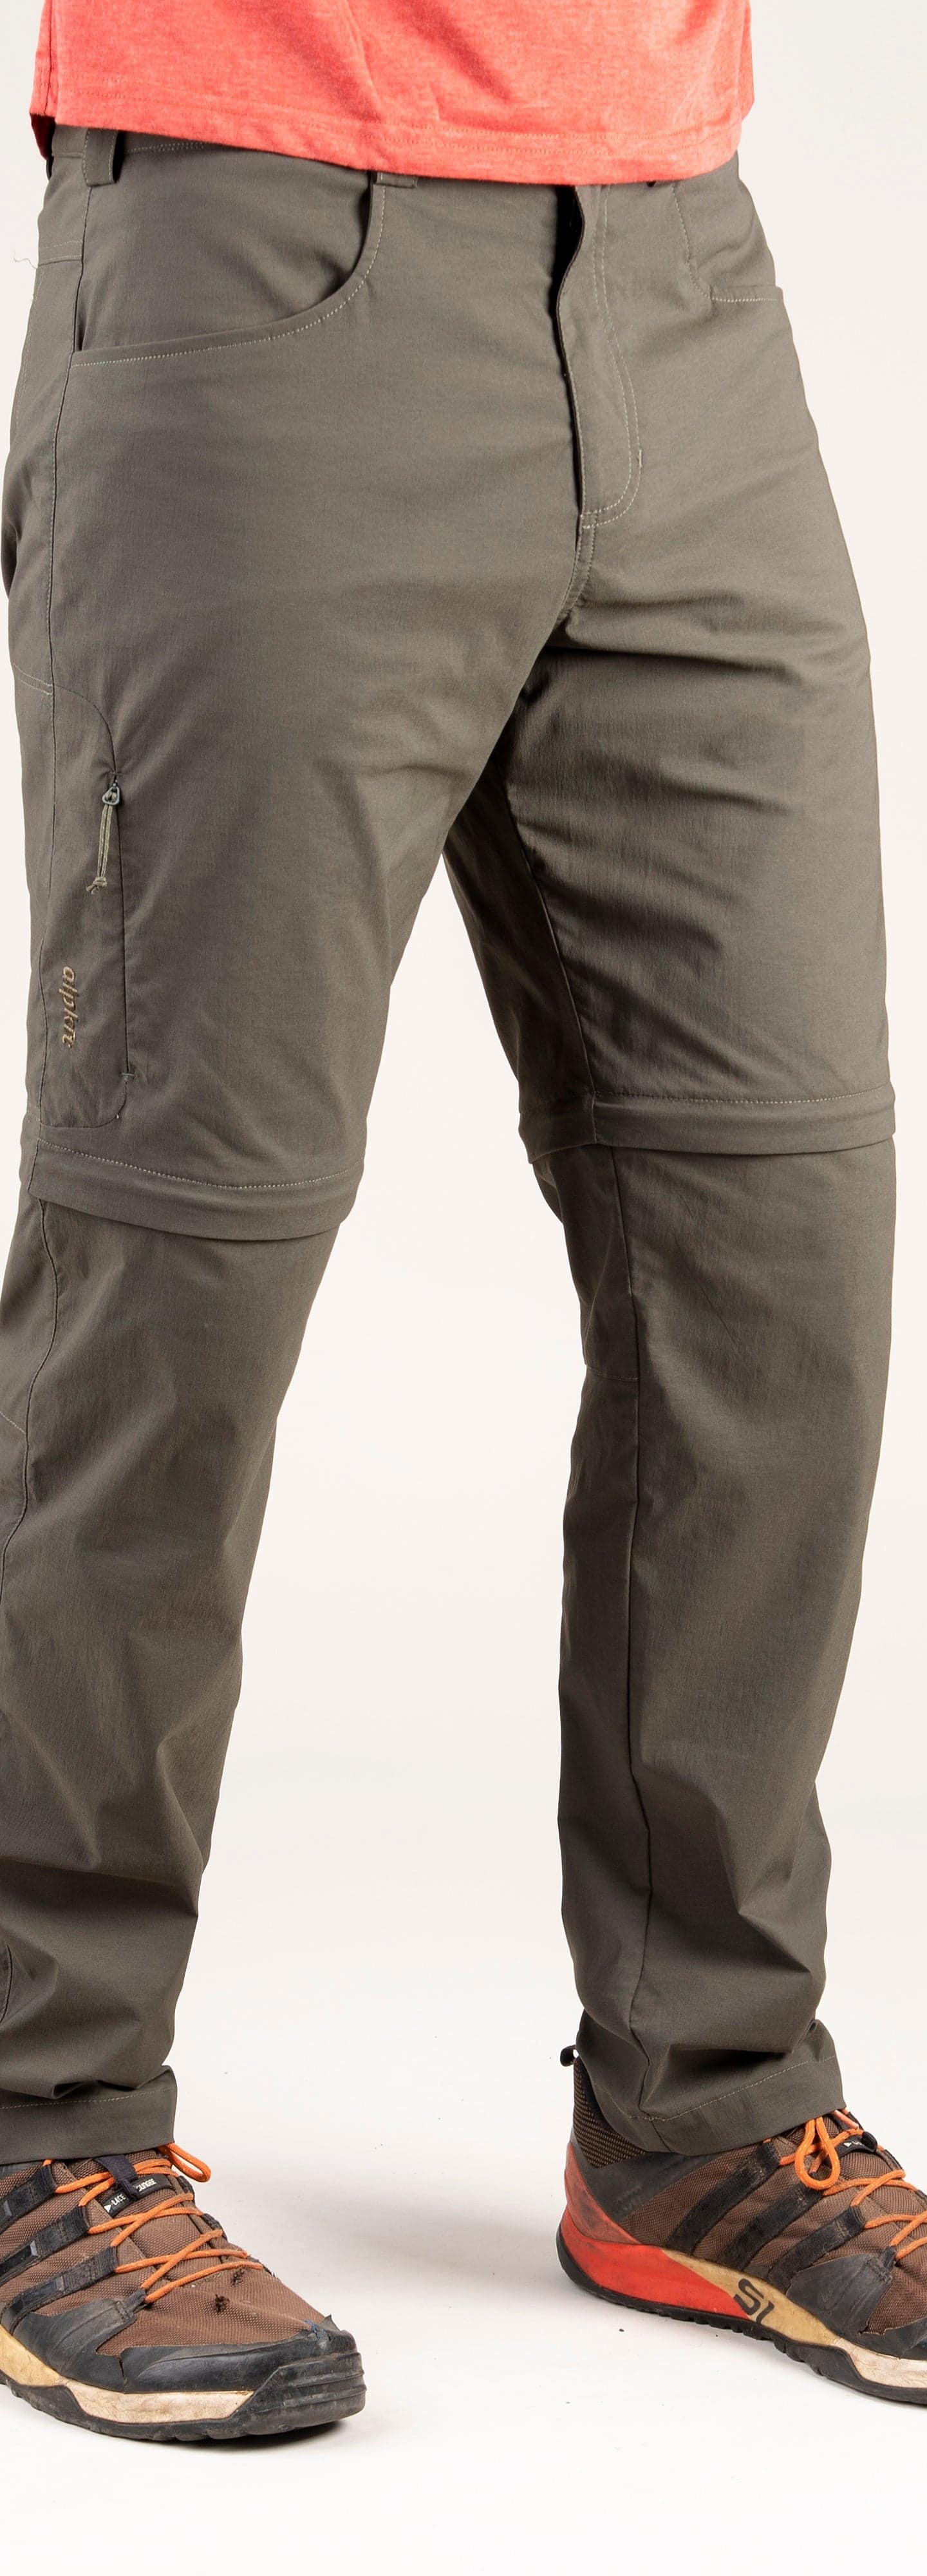 Teleki Zip  Men's Zip-Off Walking Trousers